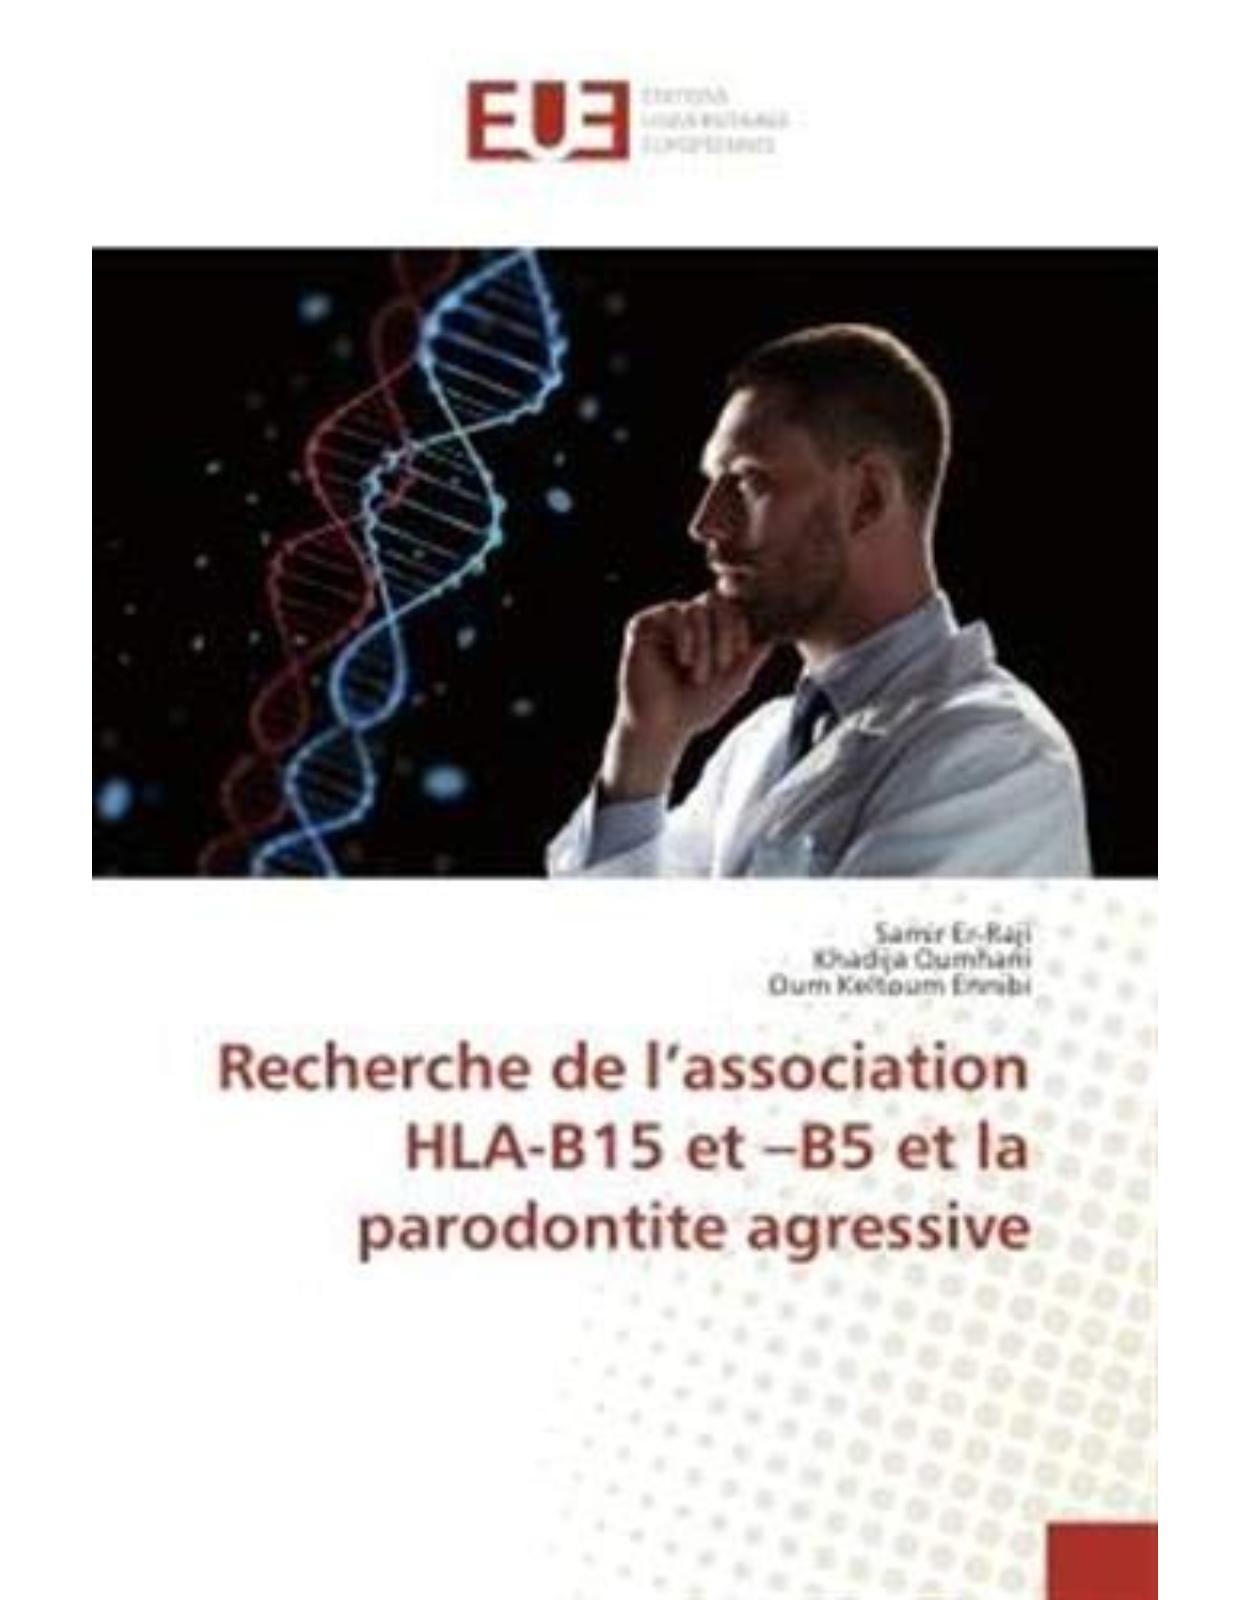 Recherche de l'association HLA-B15 et -B5 et la parodontite agressive